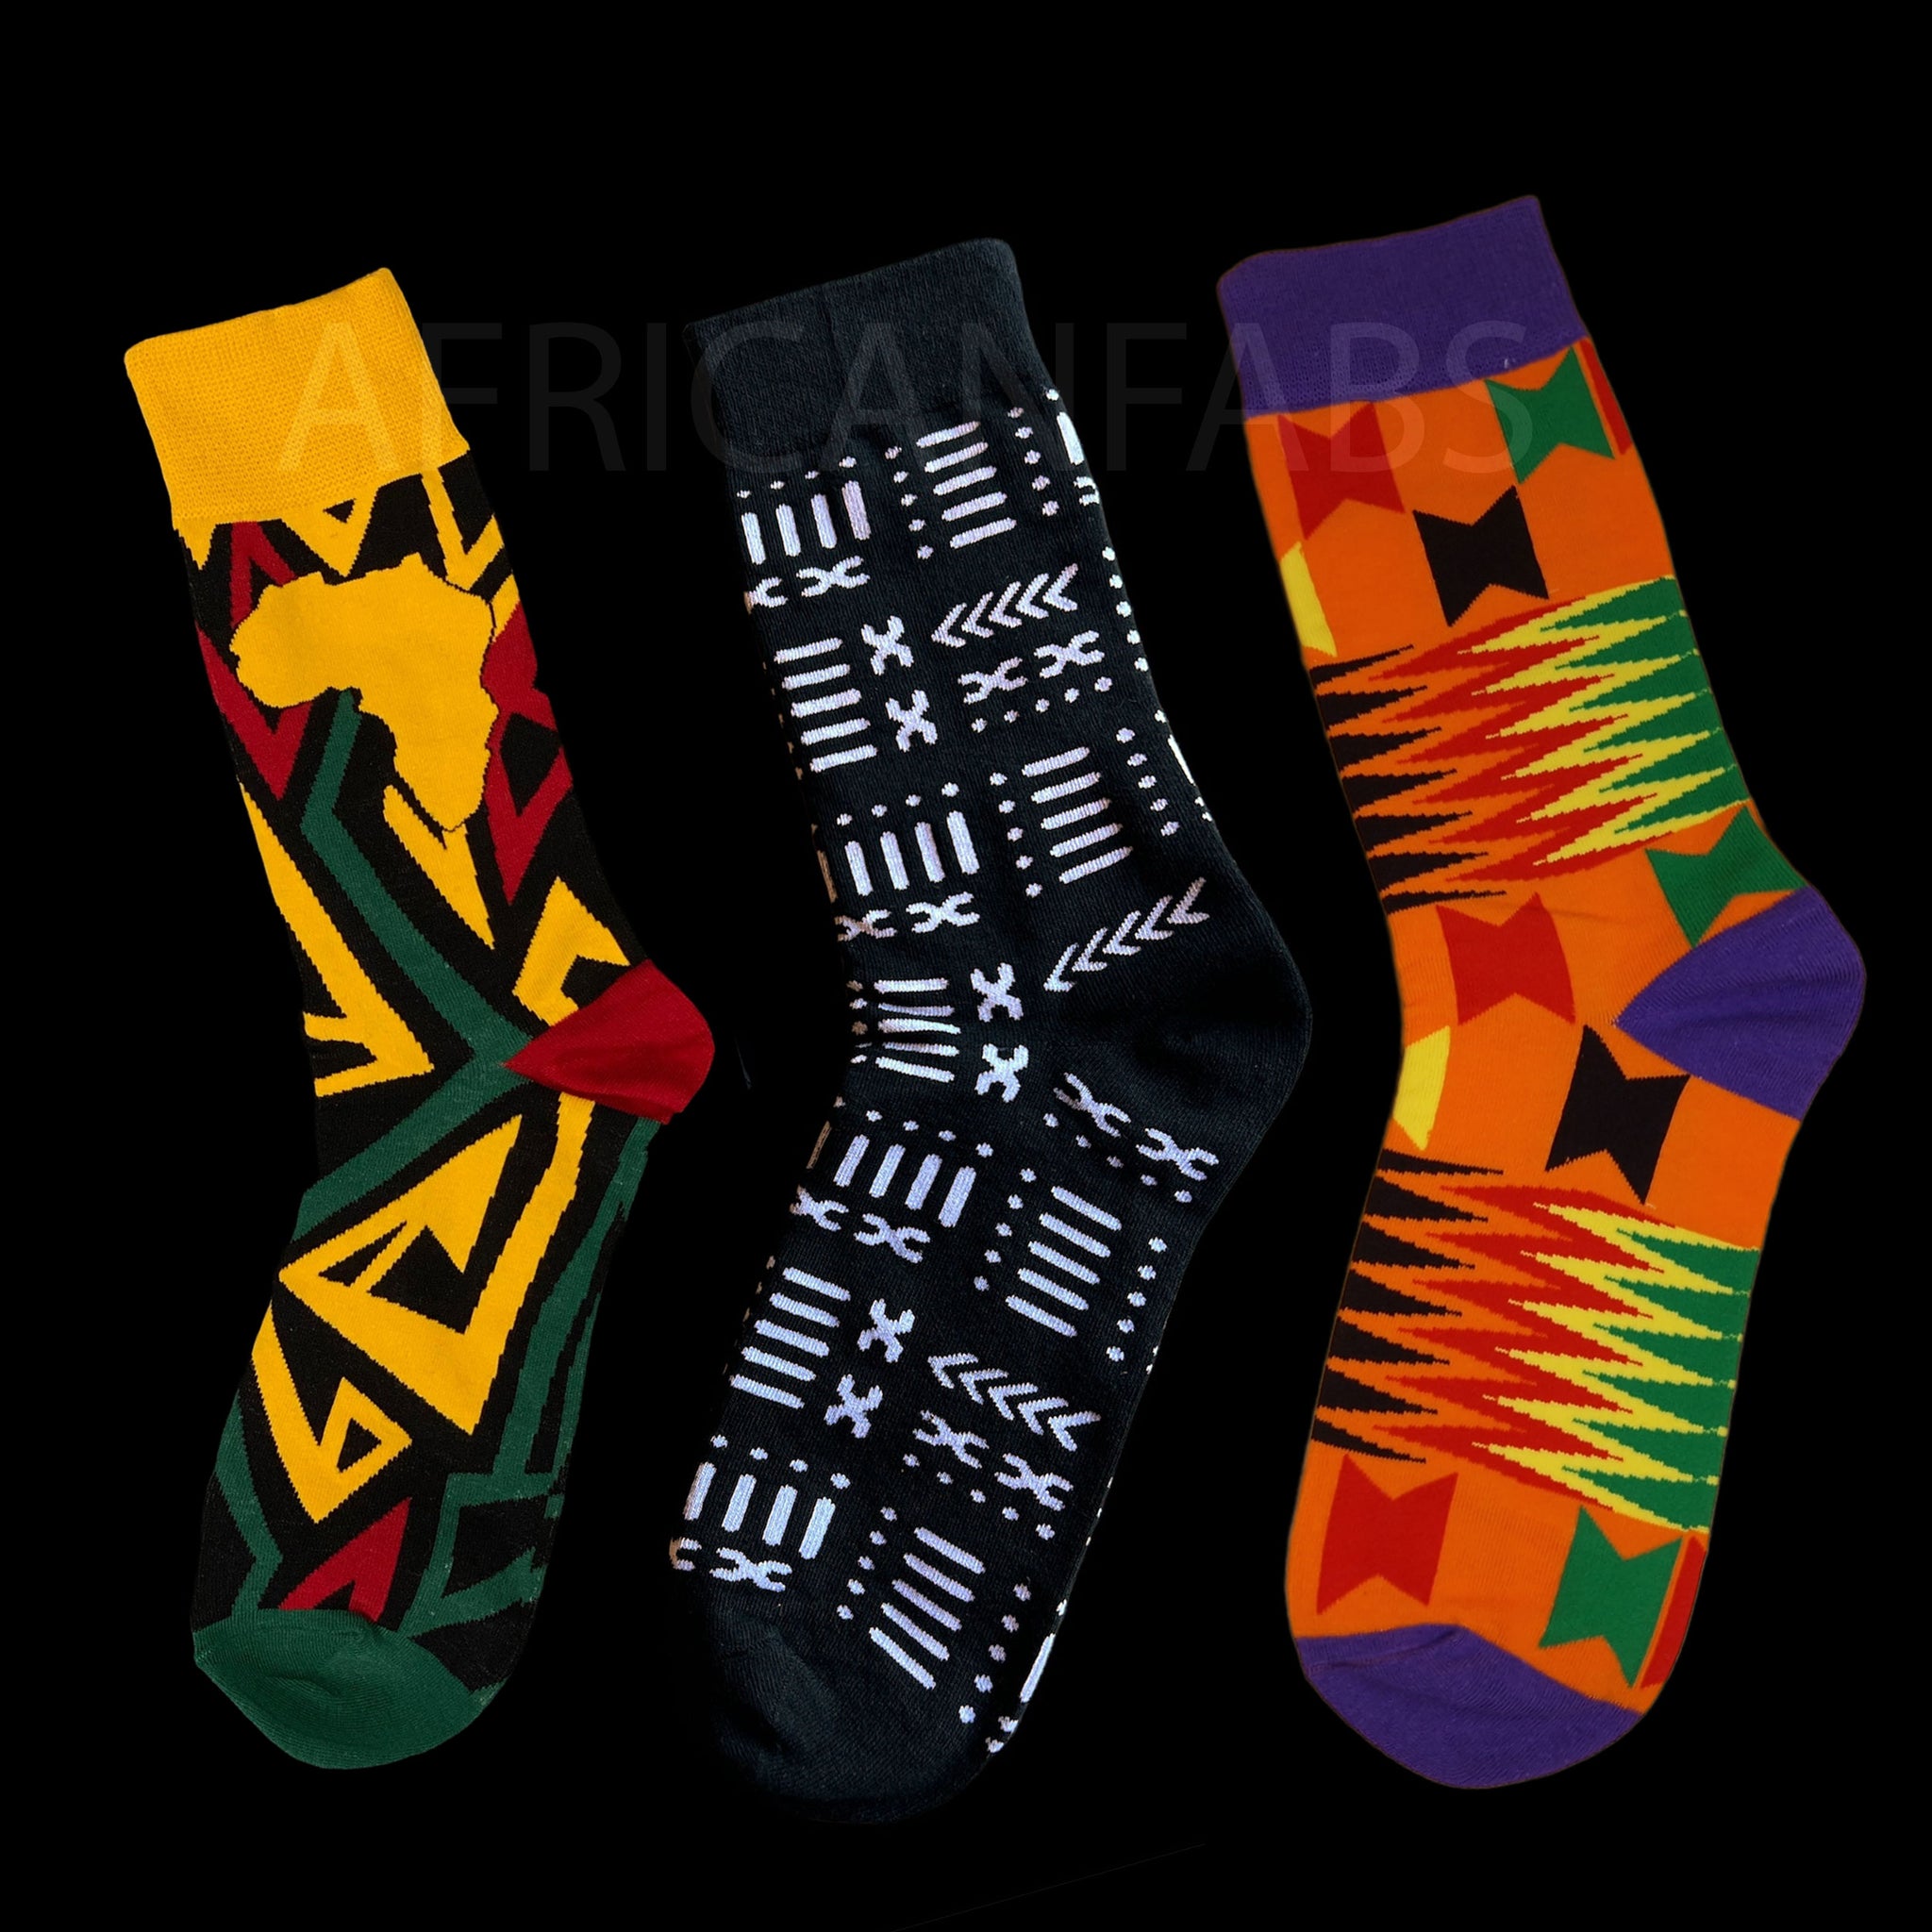 Chaussettes africaines / chaussettes afro - Lot de 3 paires